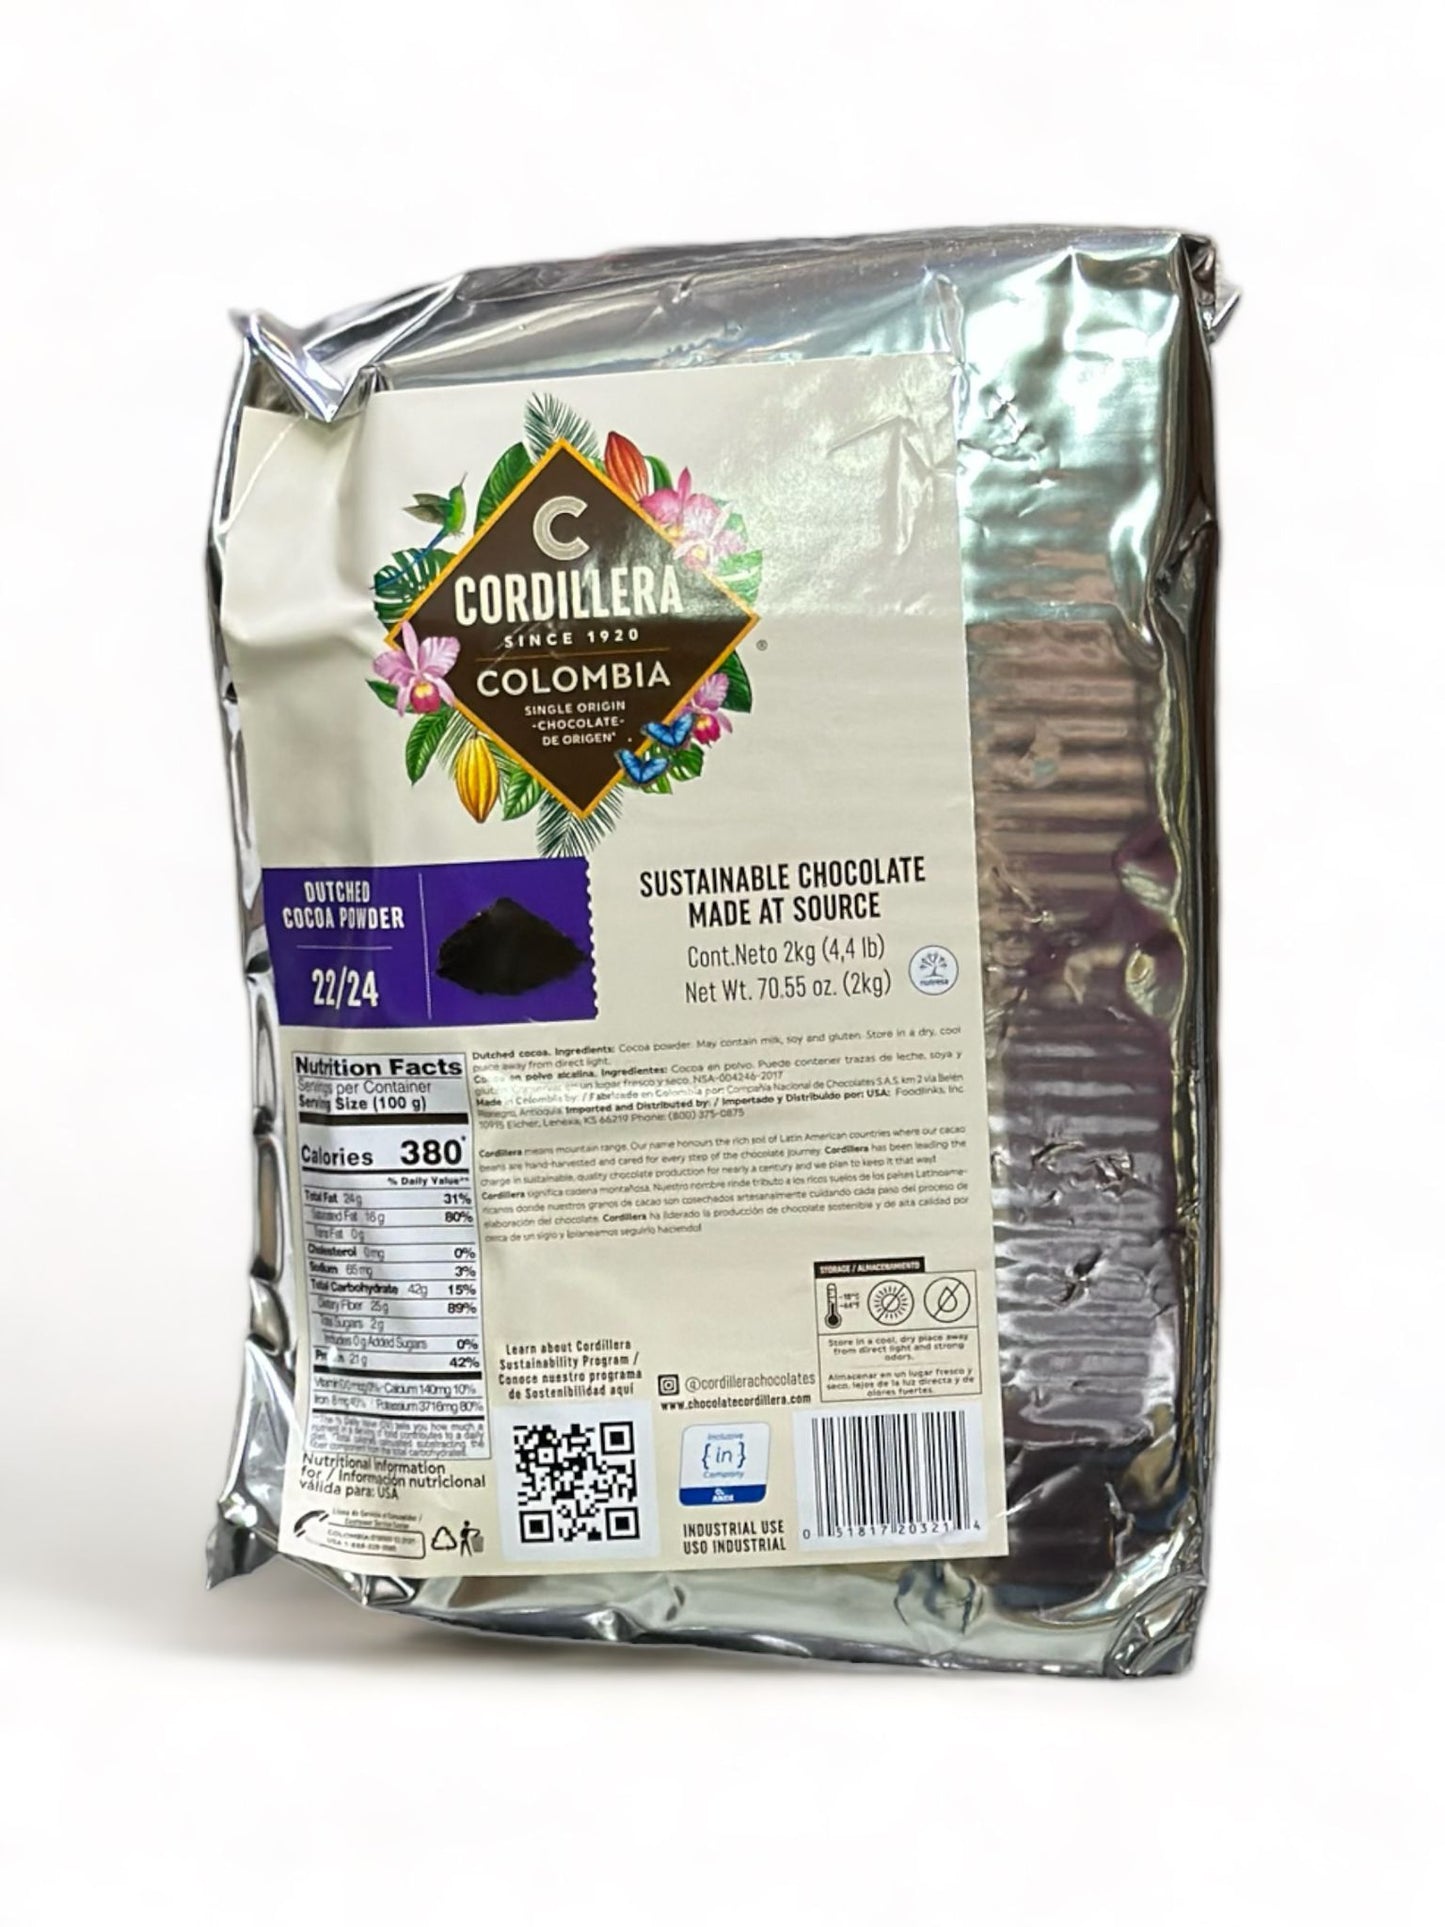 Cocoa Powder Macuira 22/24% - 6/2KG